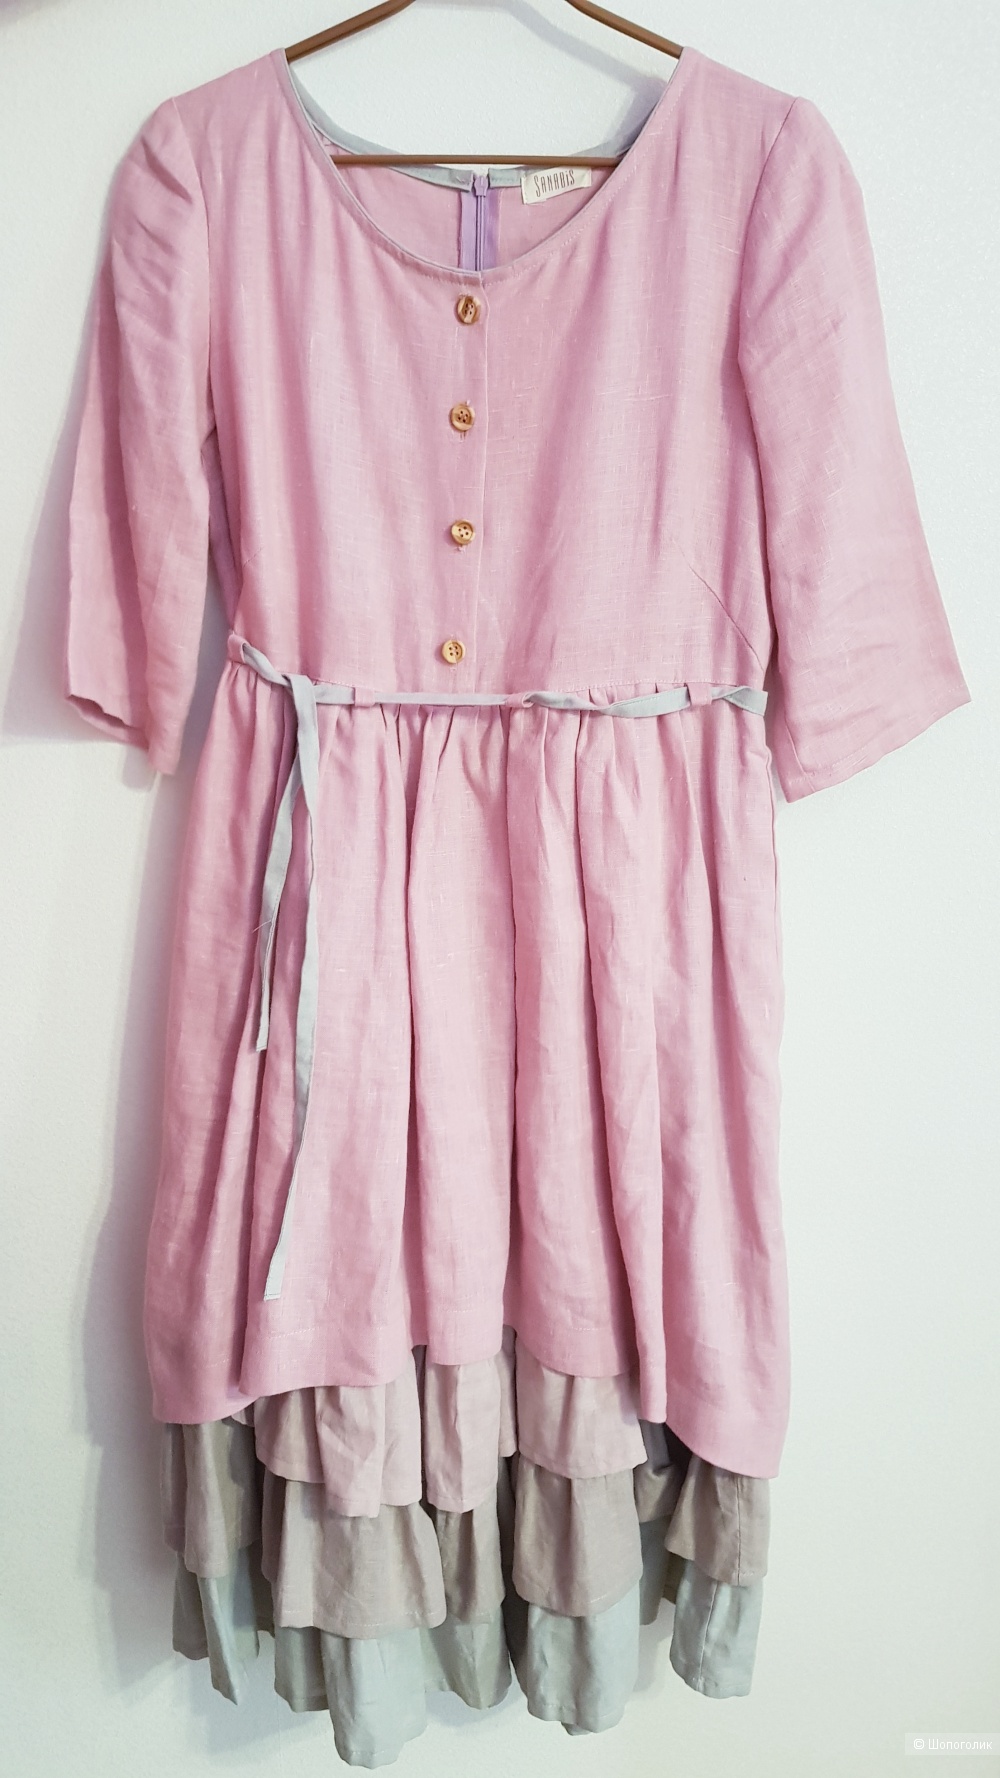 Многослойное платье из льна, sanabis, размер 44-46.